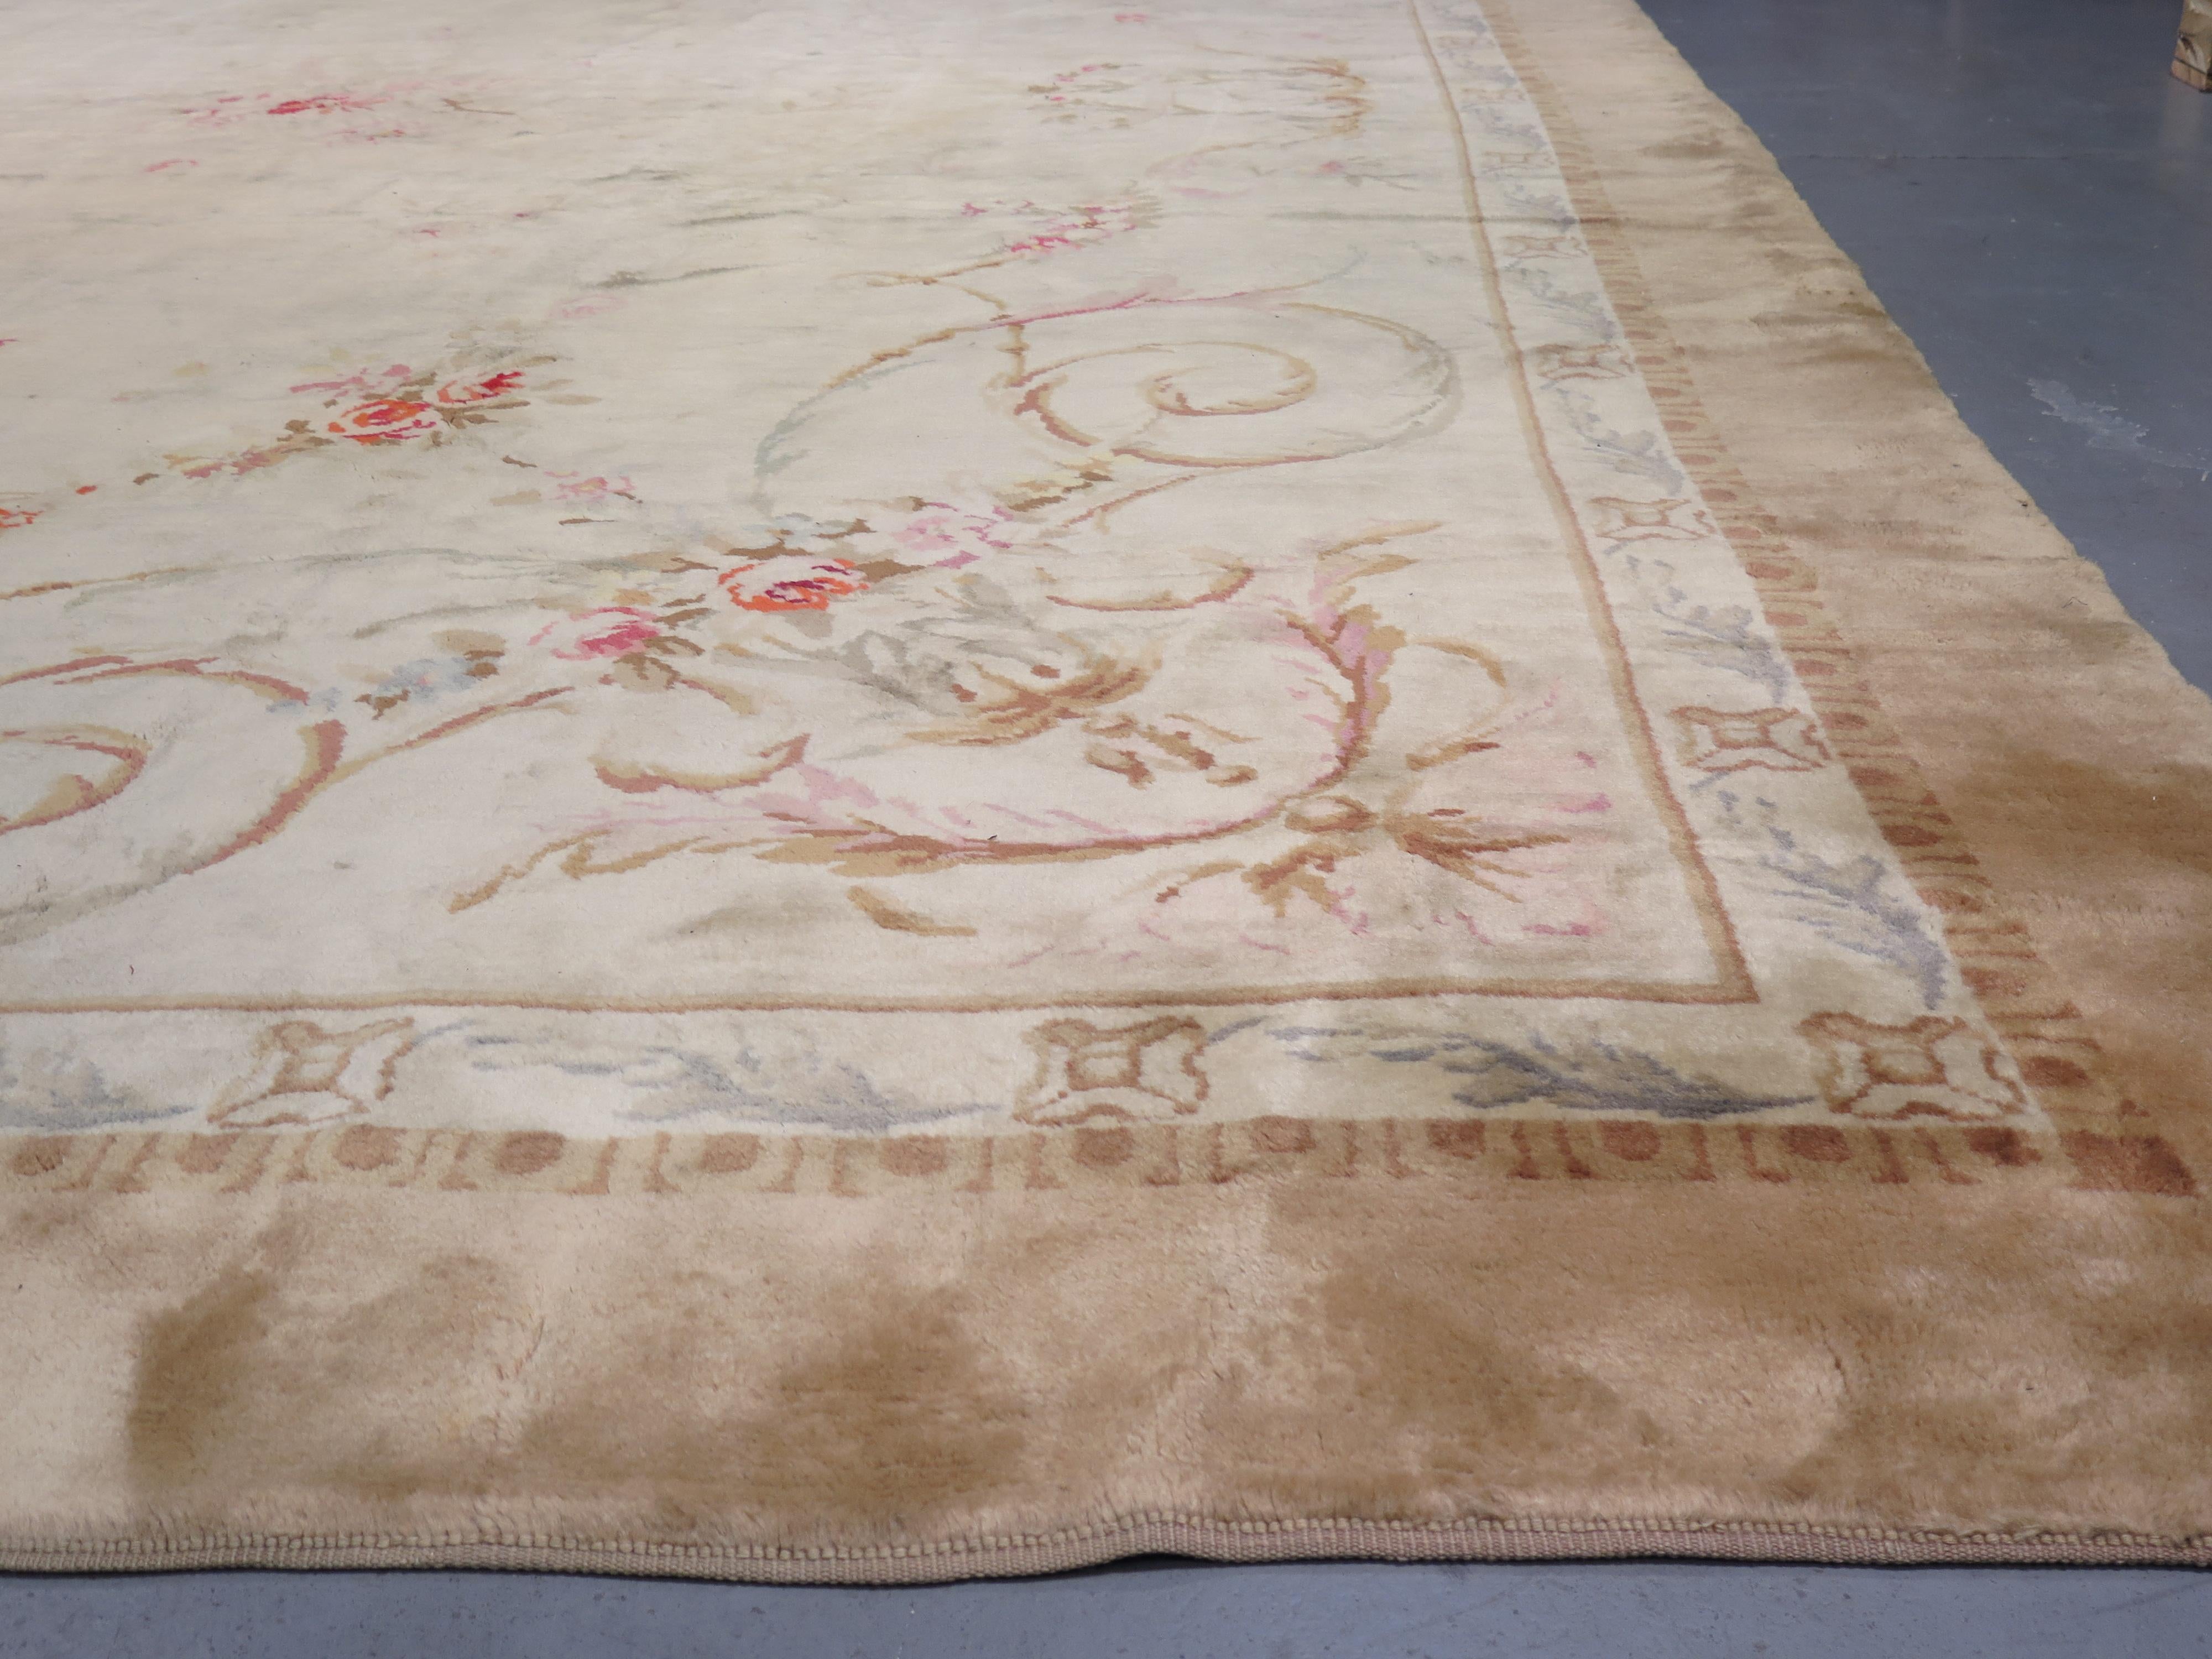 Les pièces de la Savonnerie sont sans aucun doute les plus prestigieuses de tous les tapis européens à poils noués. La manufacture de la Savonnerie a été créée en 1615 par Pierre DuPont, dans une usine de savon désaffectée en aval de Paris, en